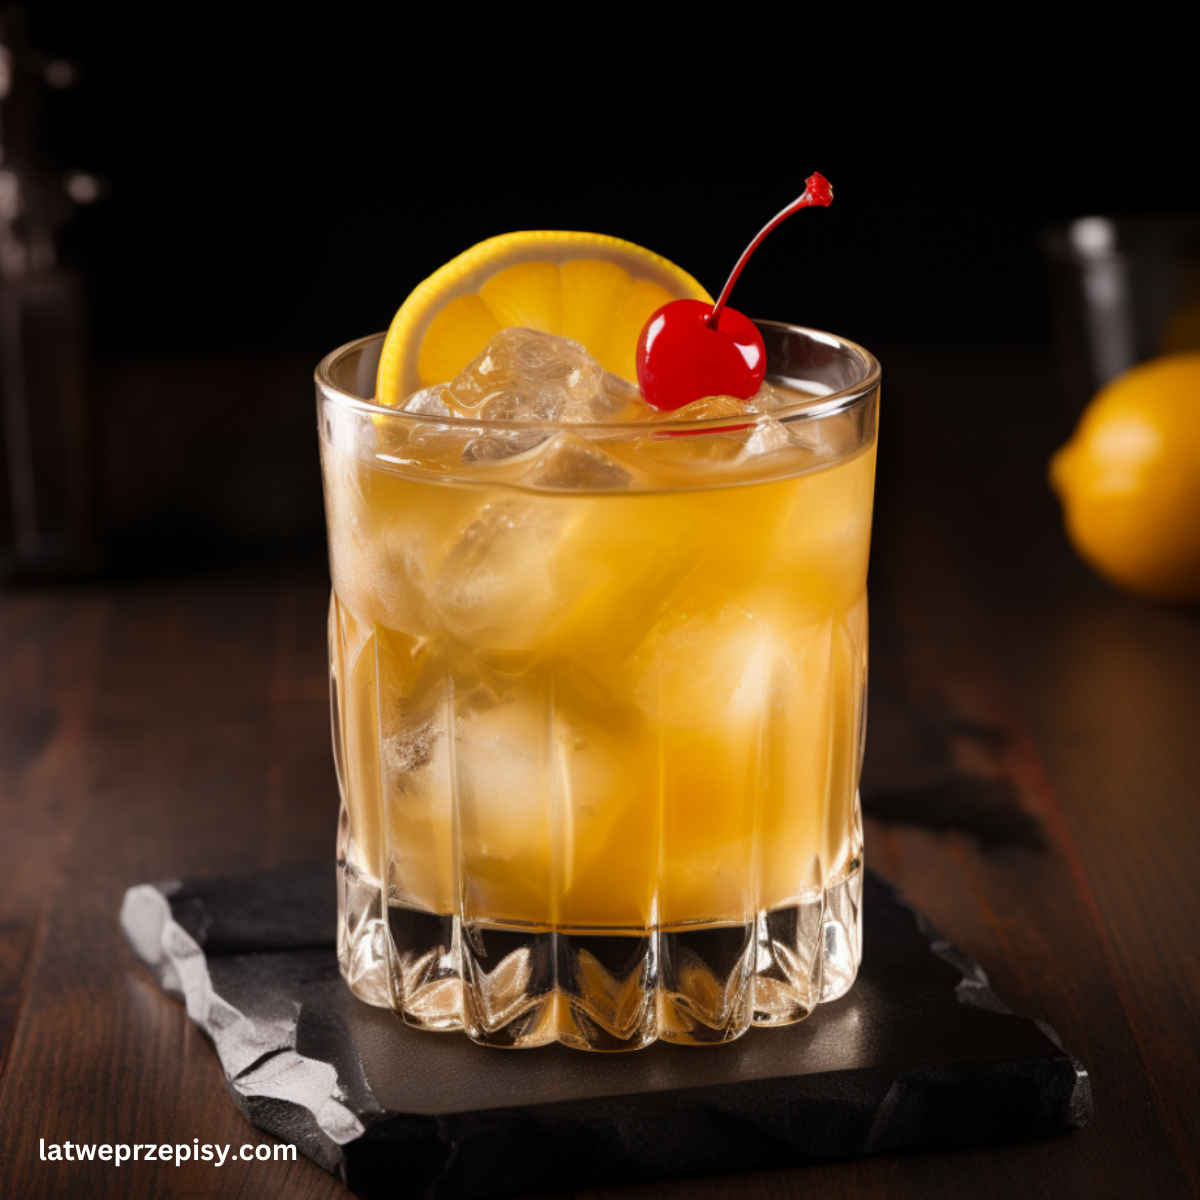 Whisky Sour Podany w szklance z plastrem pomarańczy i wisienką maraschino.